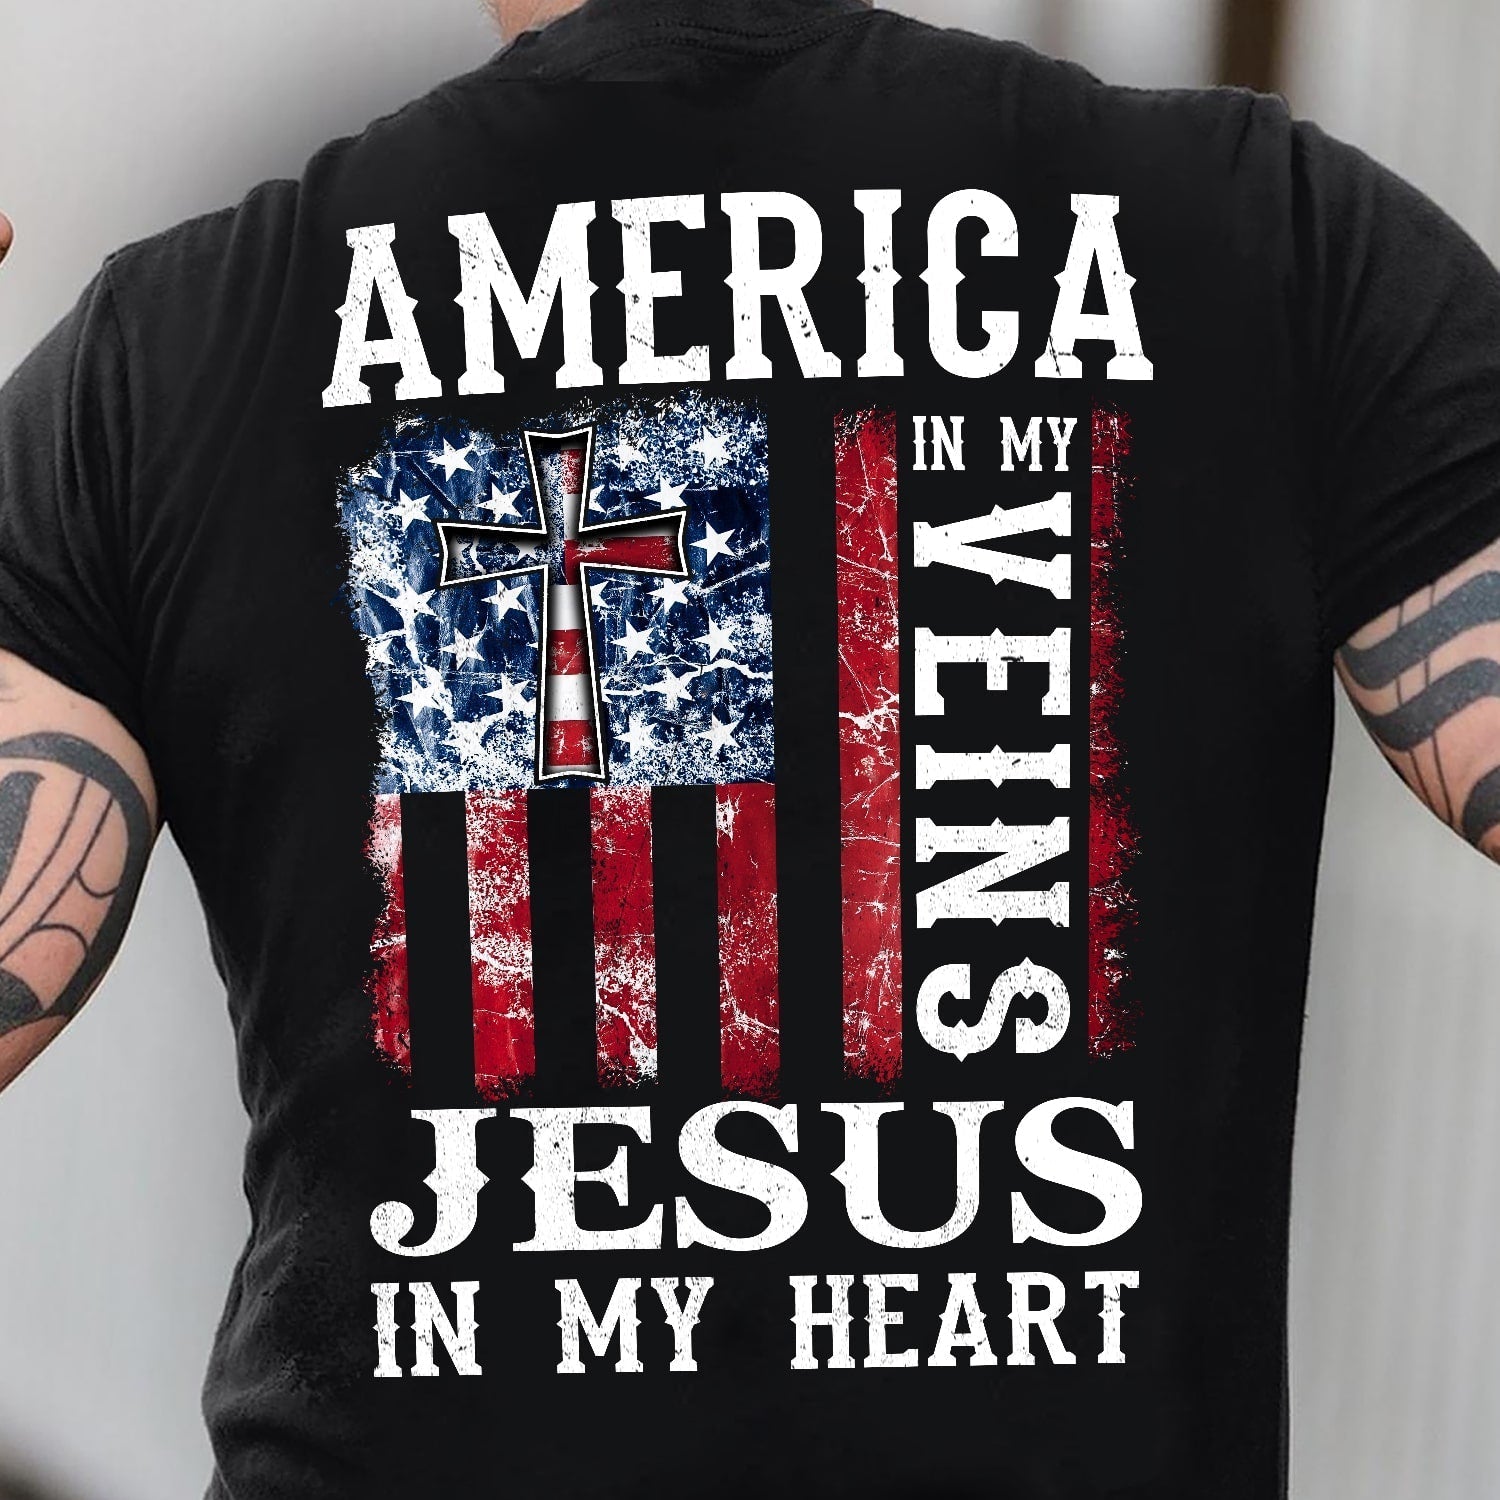 America in my veins, Jesus in my heart – Jesus Back-printed T Shirt